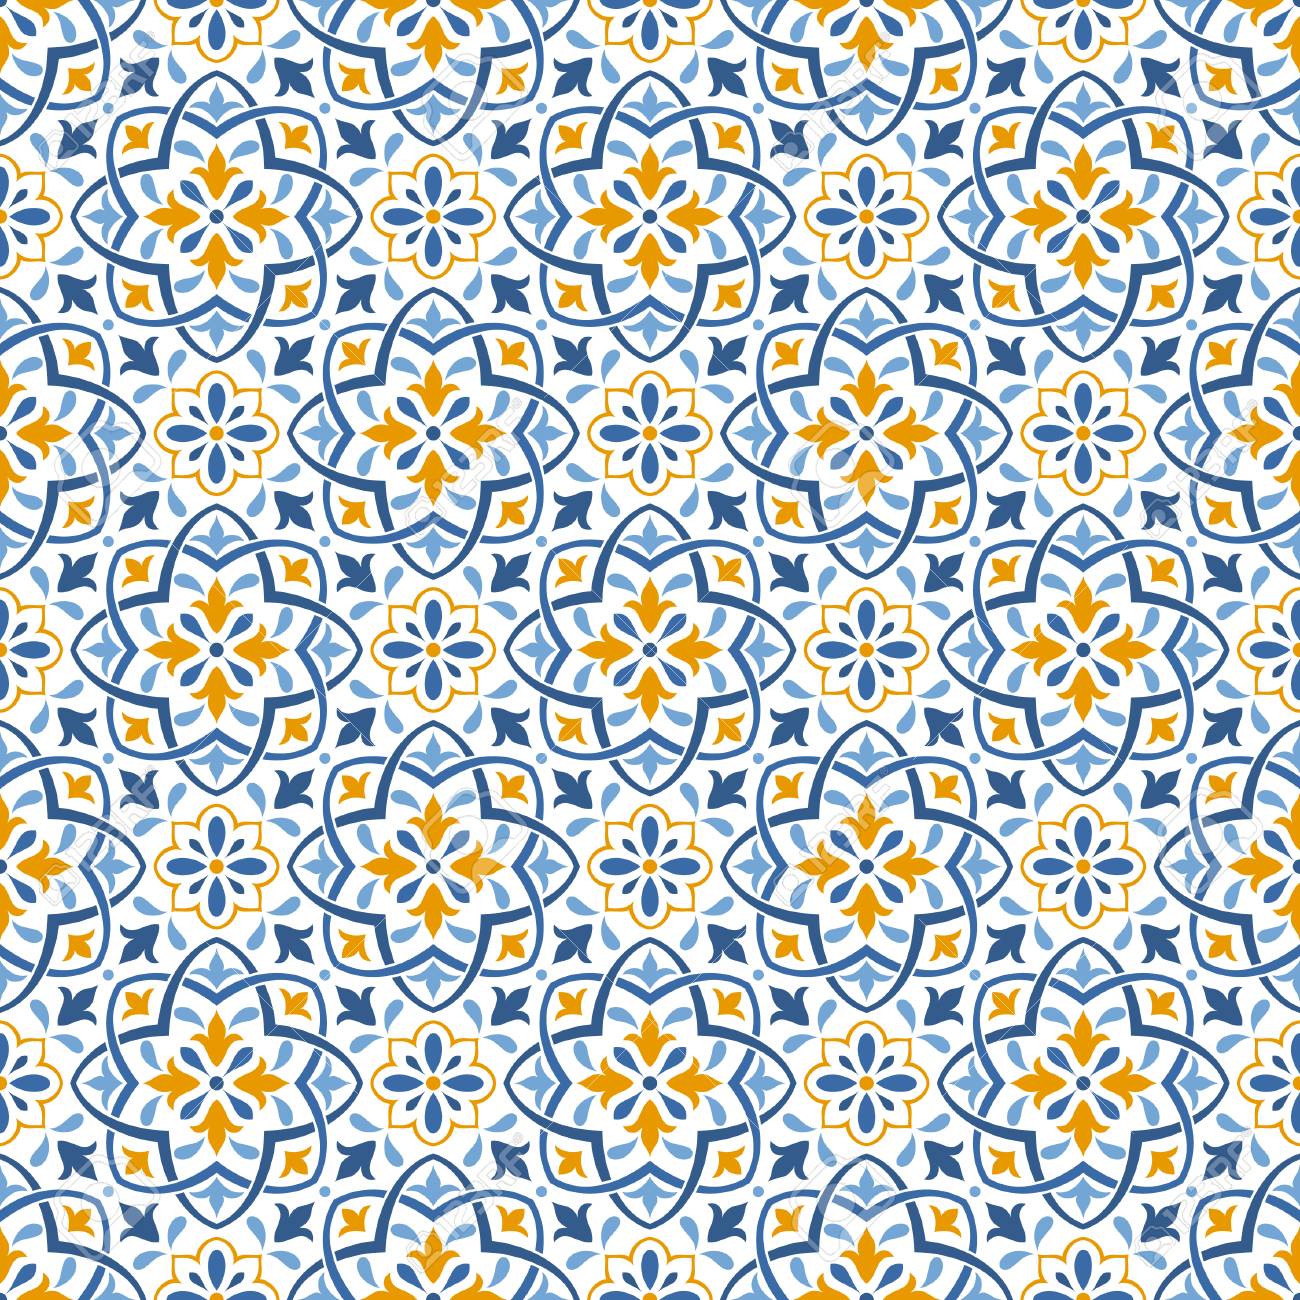 Ethnic Seamless Patterns Background In Folk Style Mediterranean